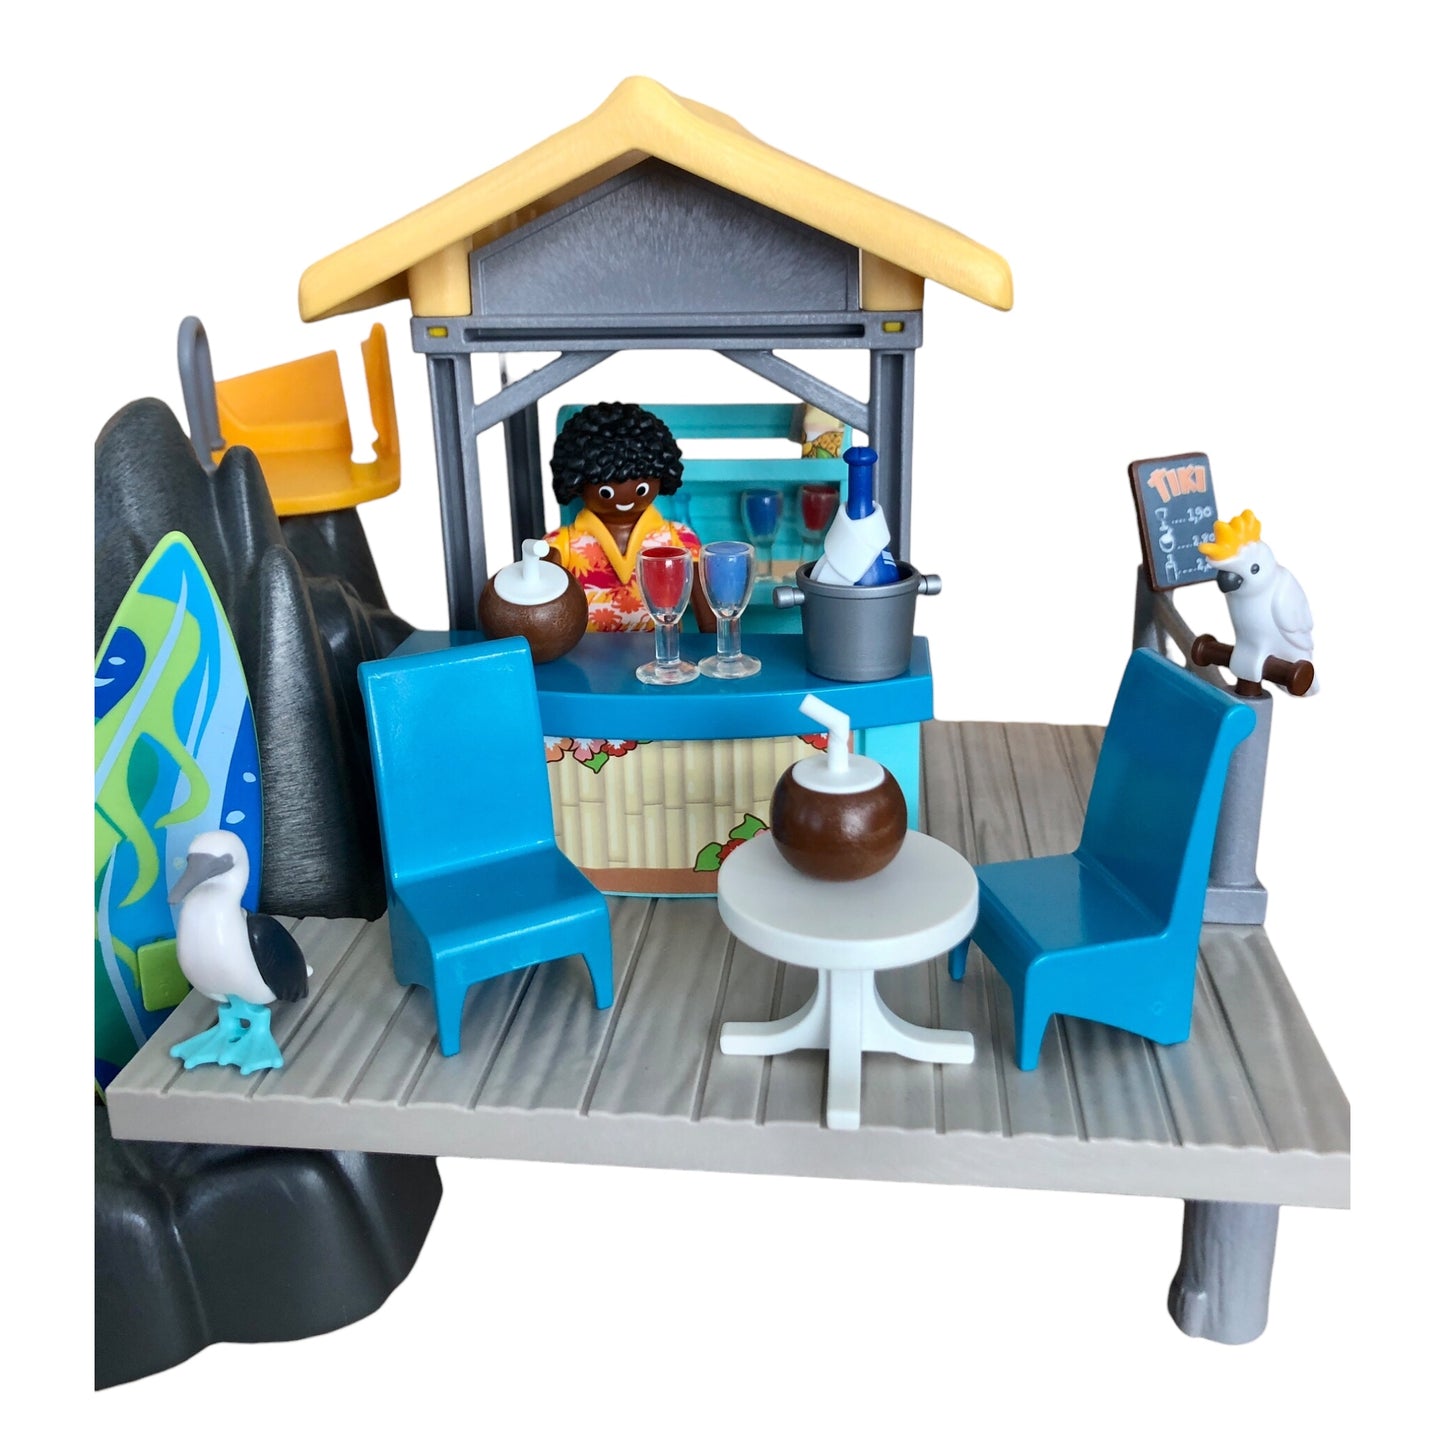 Playmobil ® Family Fun Island Bar à Jus 6979